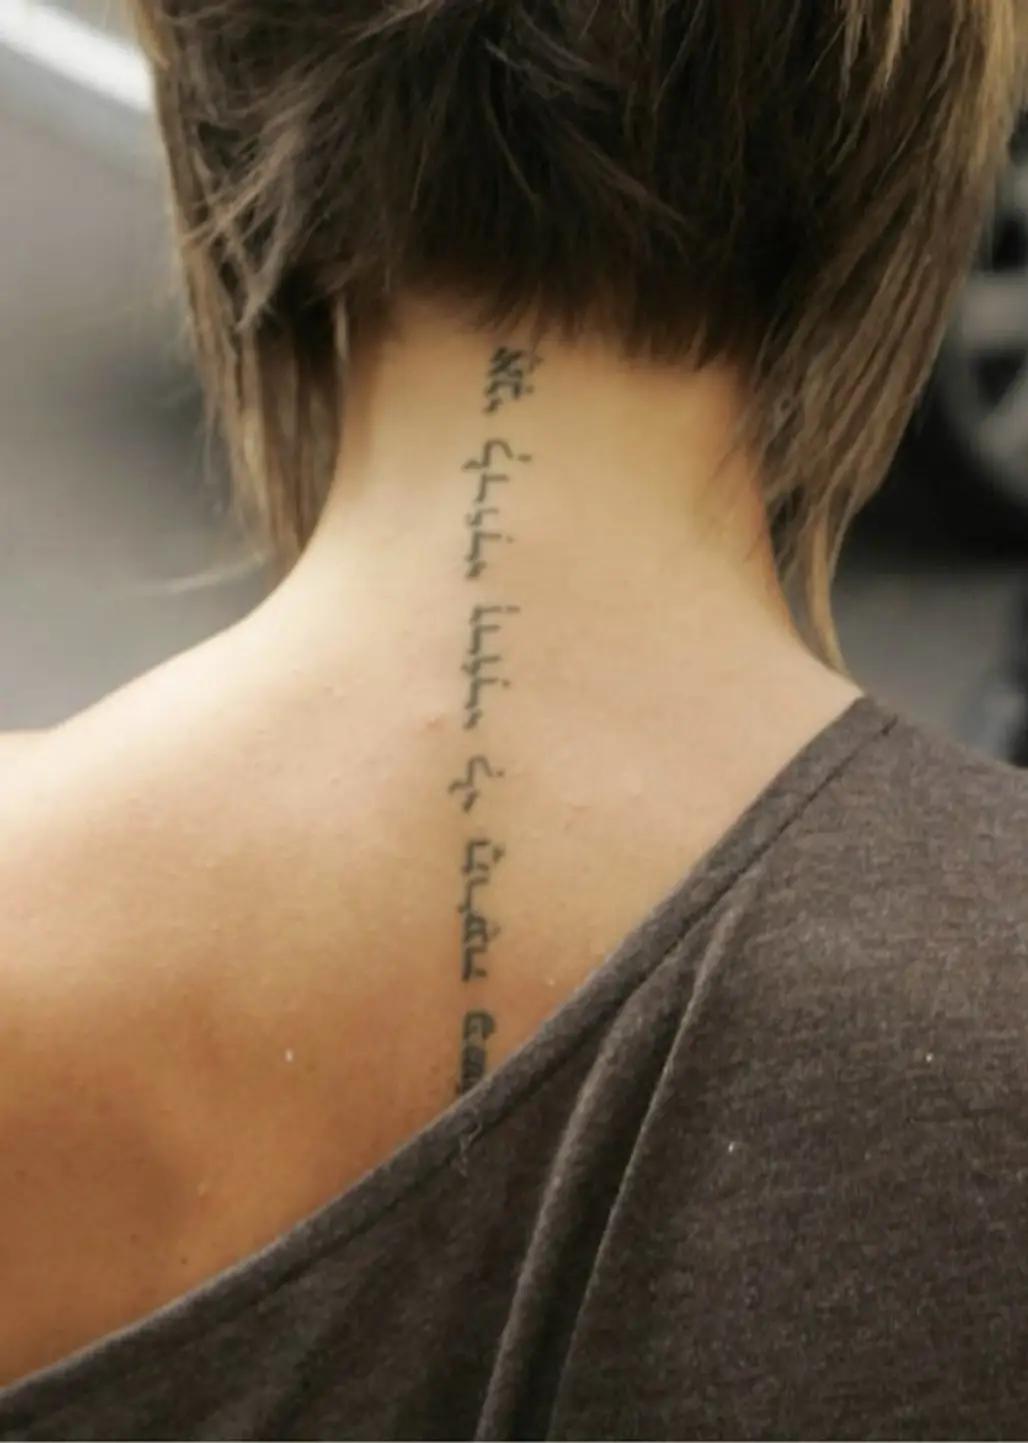 Victoria Beckham’s Spine Tattoo